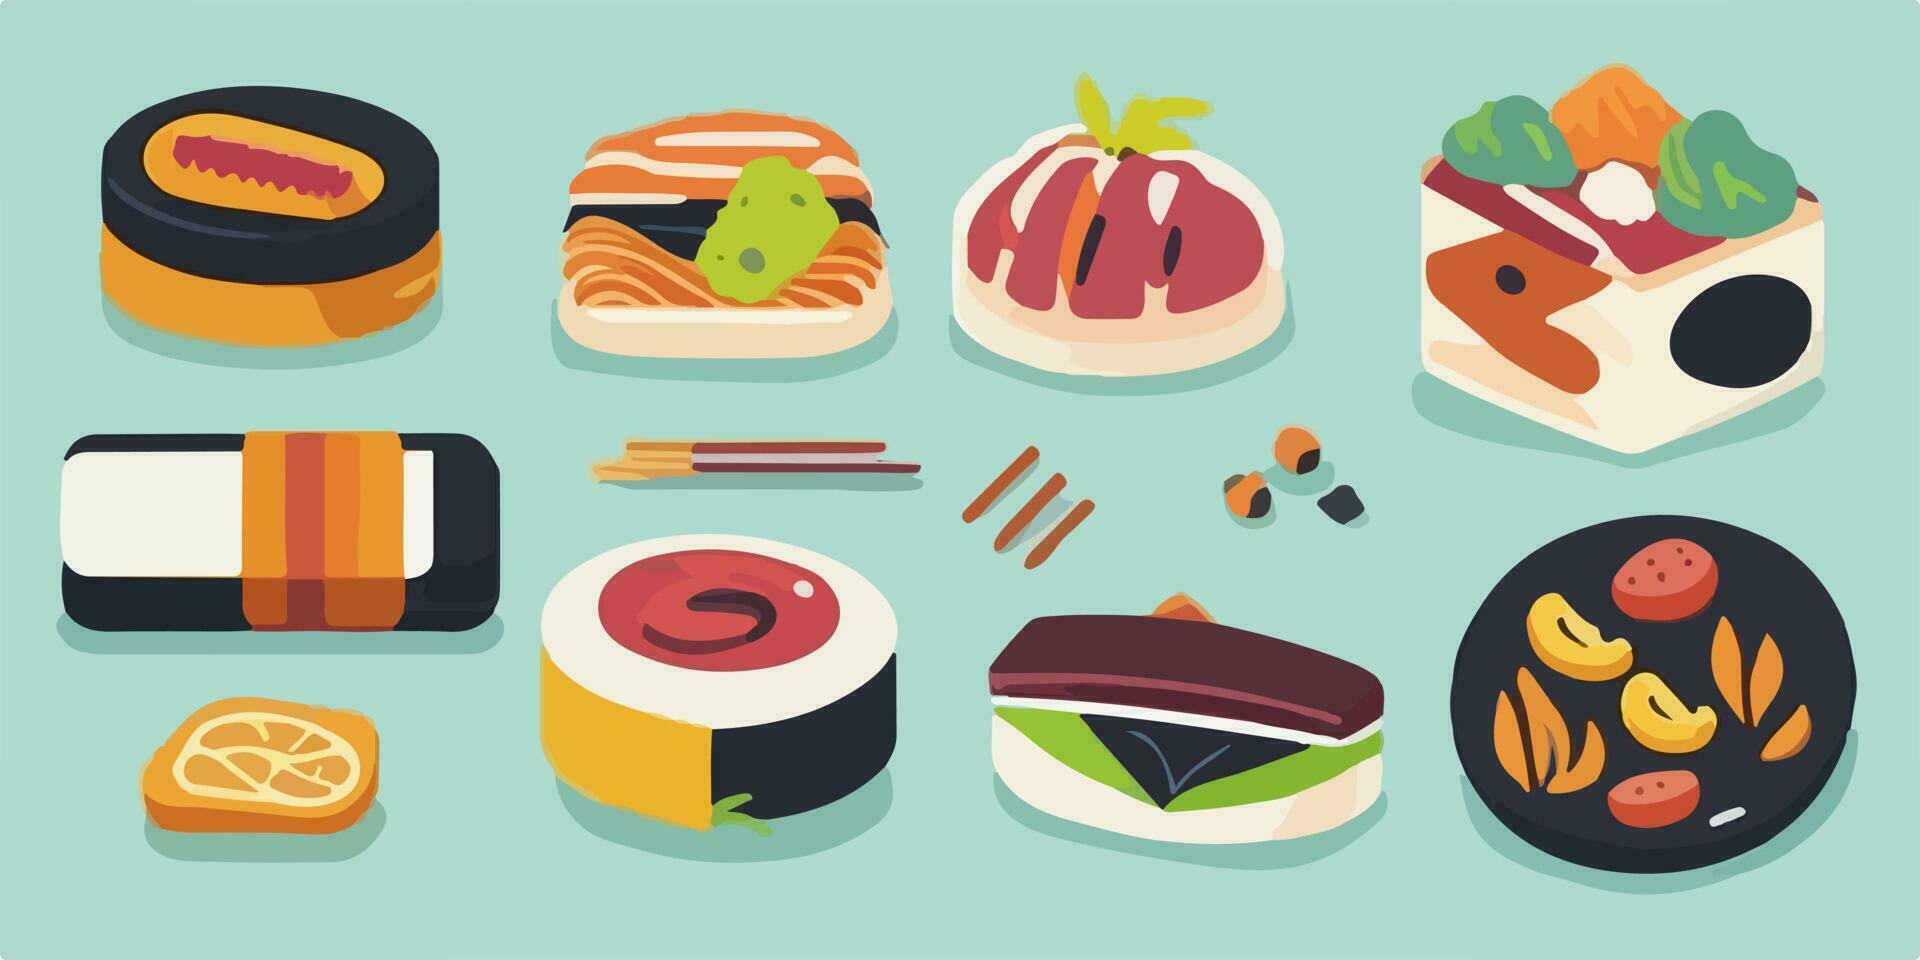 délicieusement mignon, amusement et coloré Sushi ensemble illustration avec adorable personnages vecteur